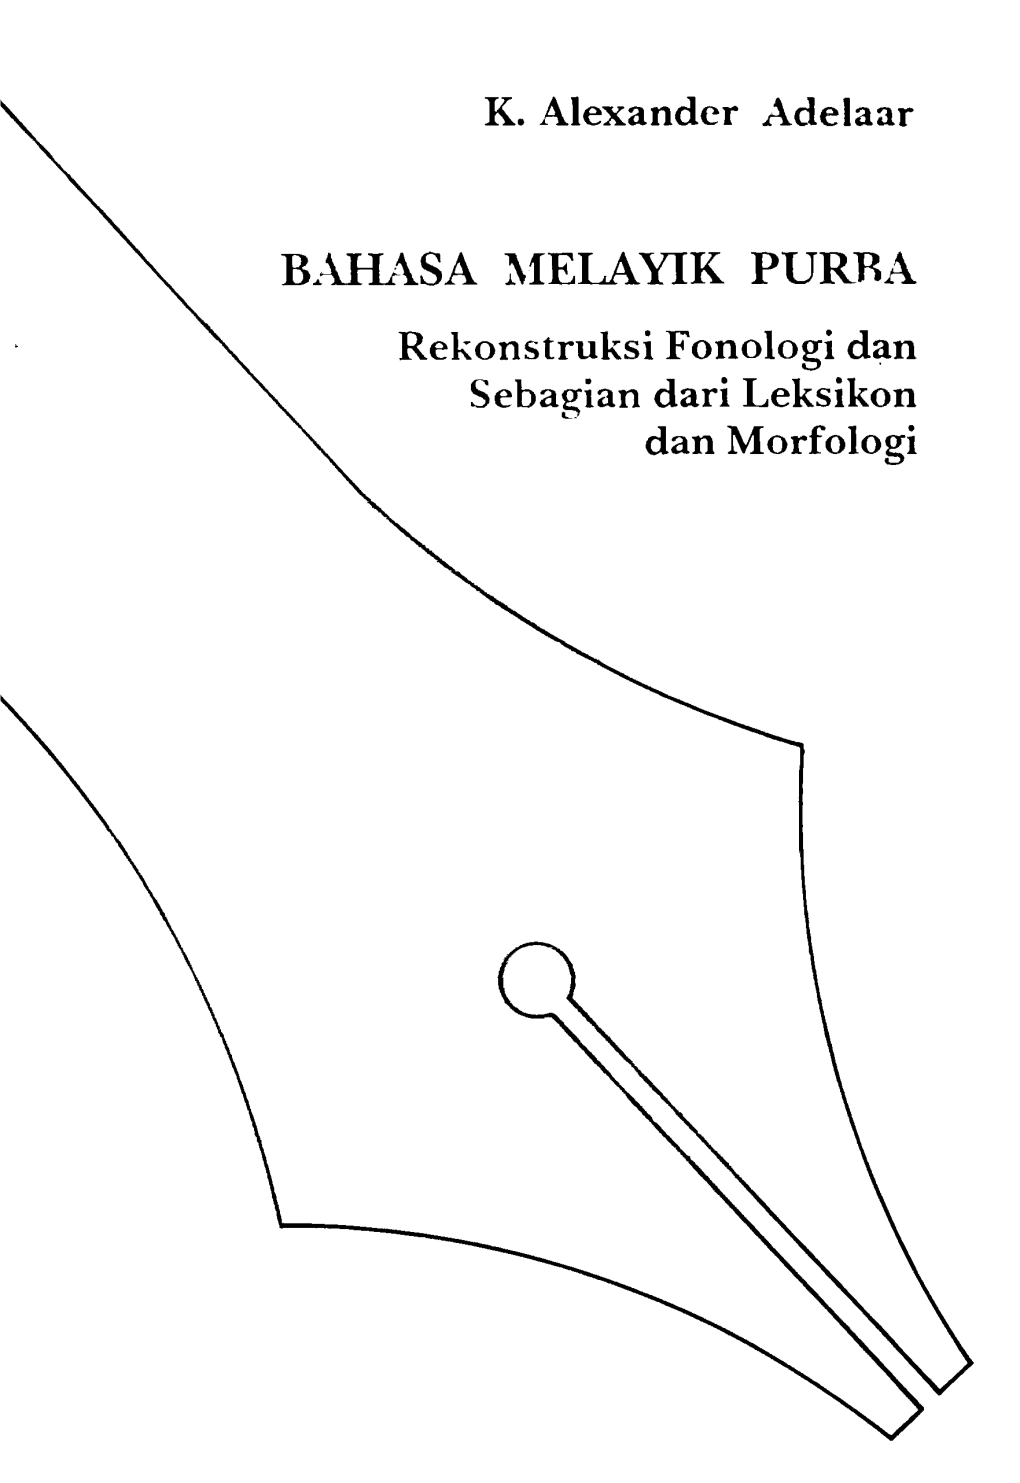 Bahasa Melayik Purba